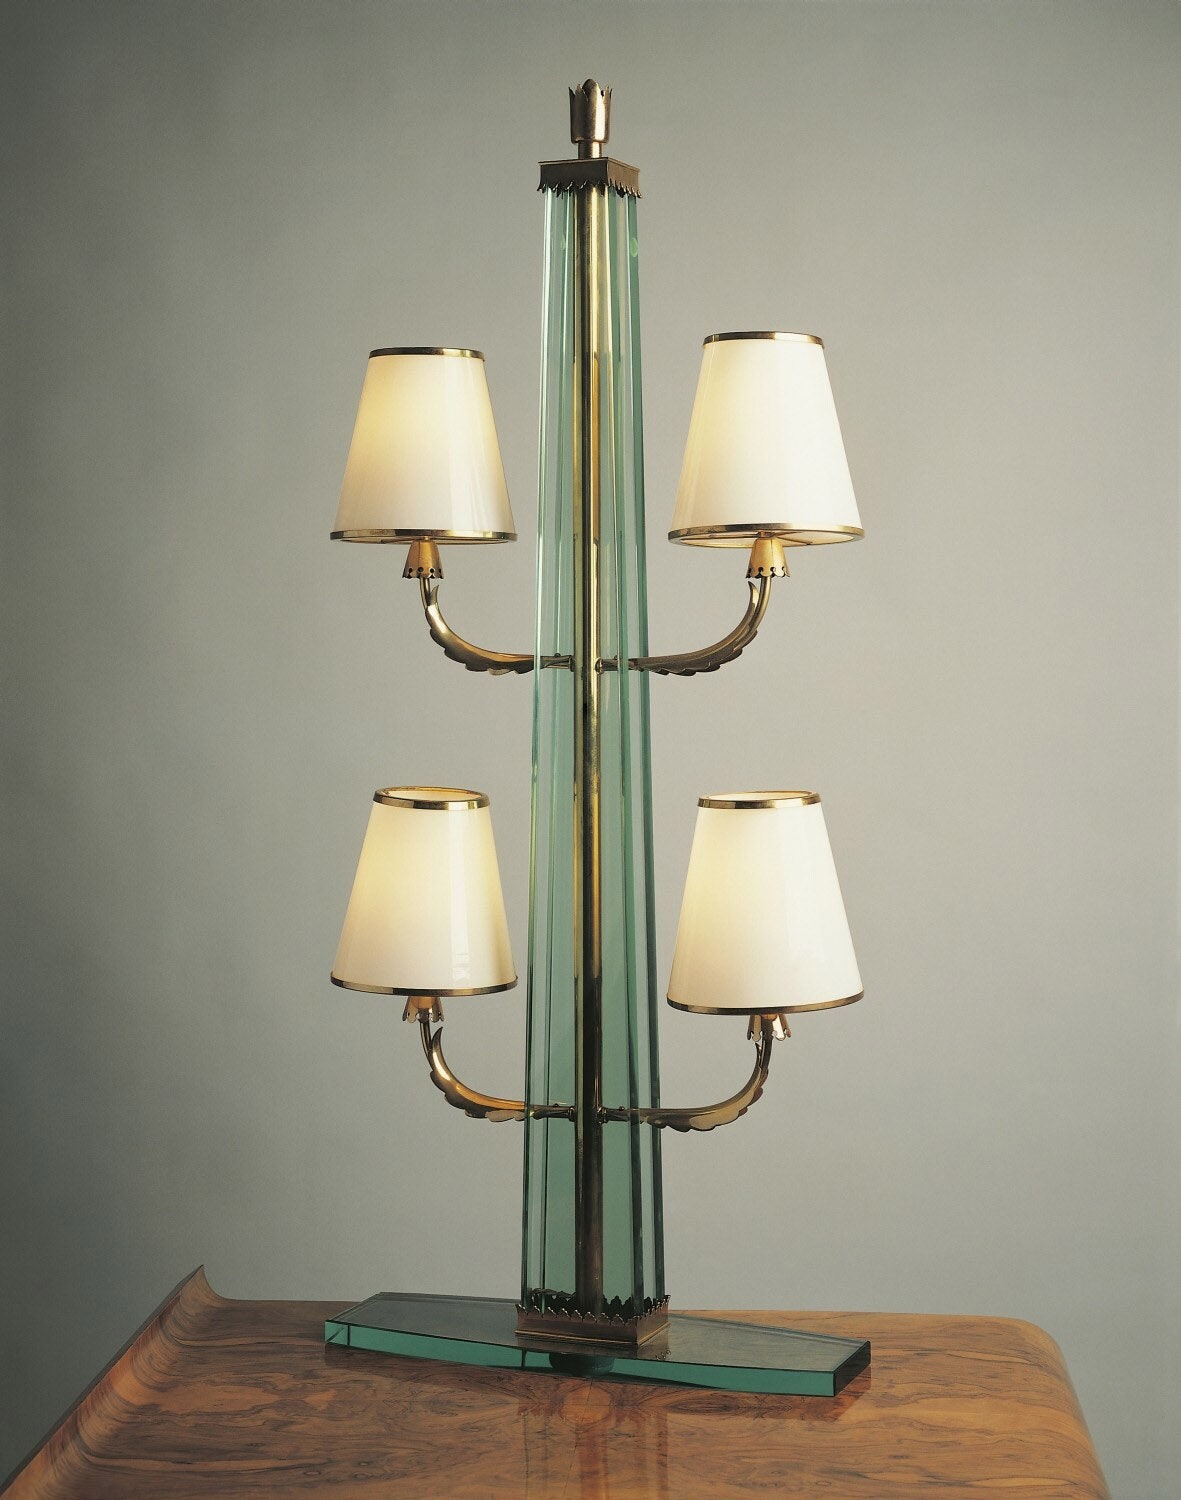 Настольная лампа по дизайну Джо Понти для Fontana Arte.nbsp